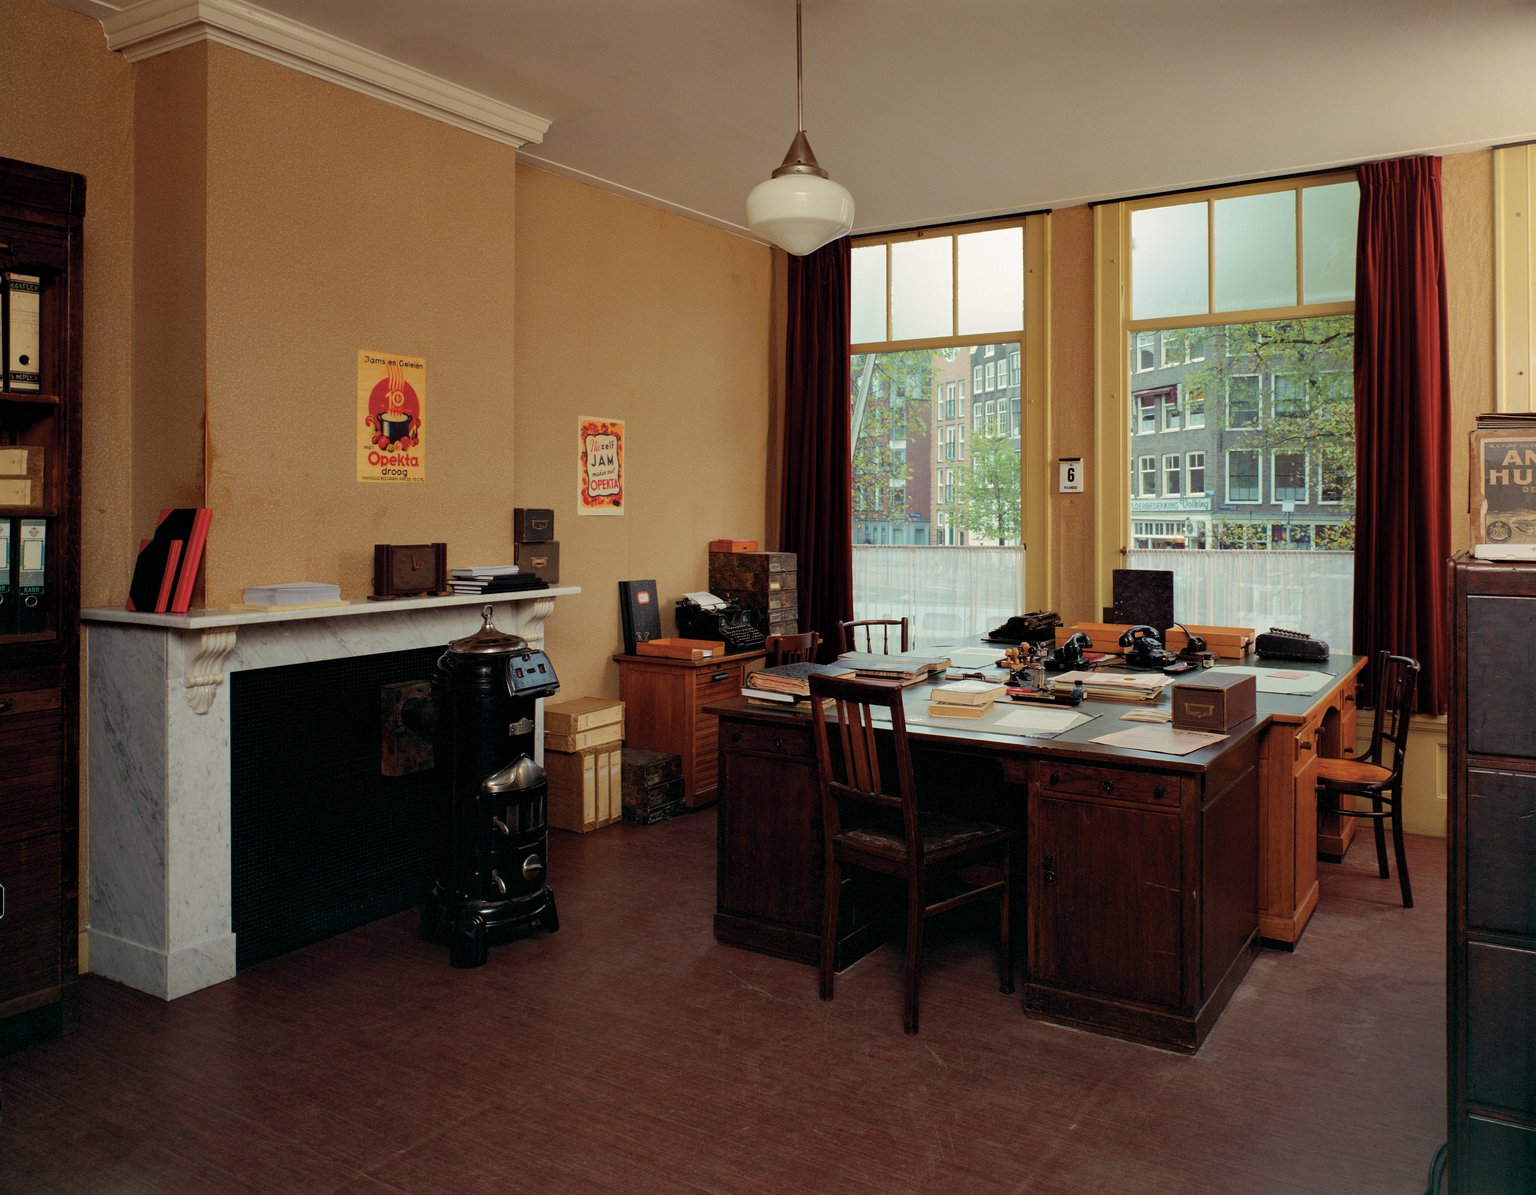 Het kantoor van Johannes Kleiman, Miep Gies en Bep Voskuijl (reconstructie, 1999).